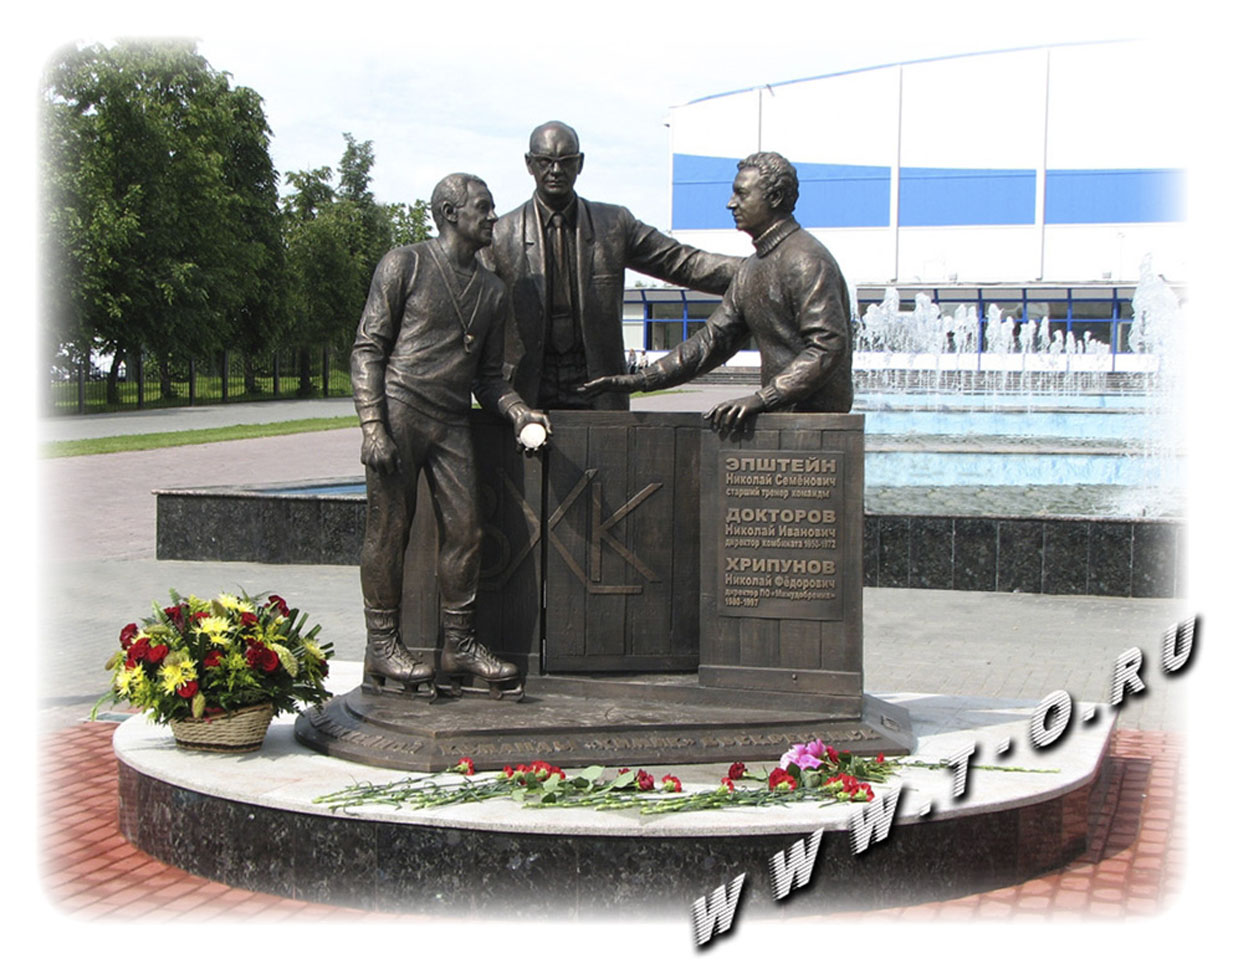 Скульптурная композиция, изготовленная из бронзы, посвящена основателям хоккейной команды. Установлена в городе Воскресенск Московской области.